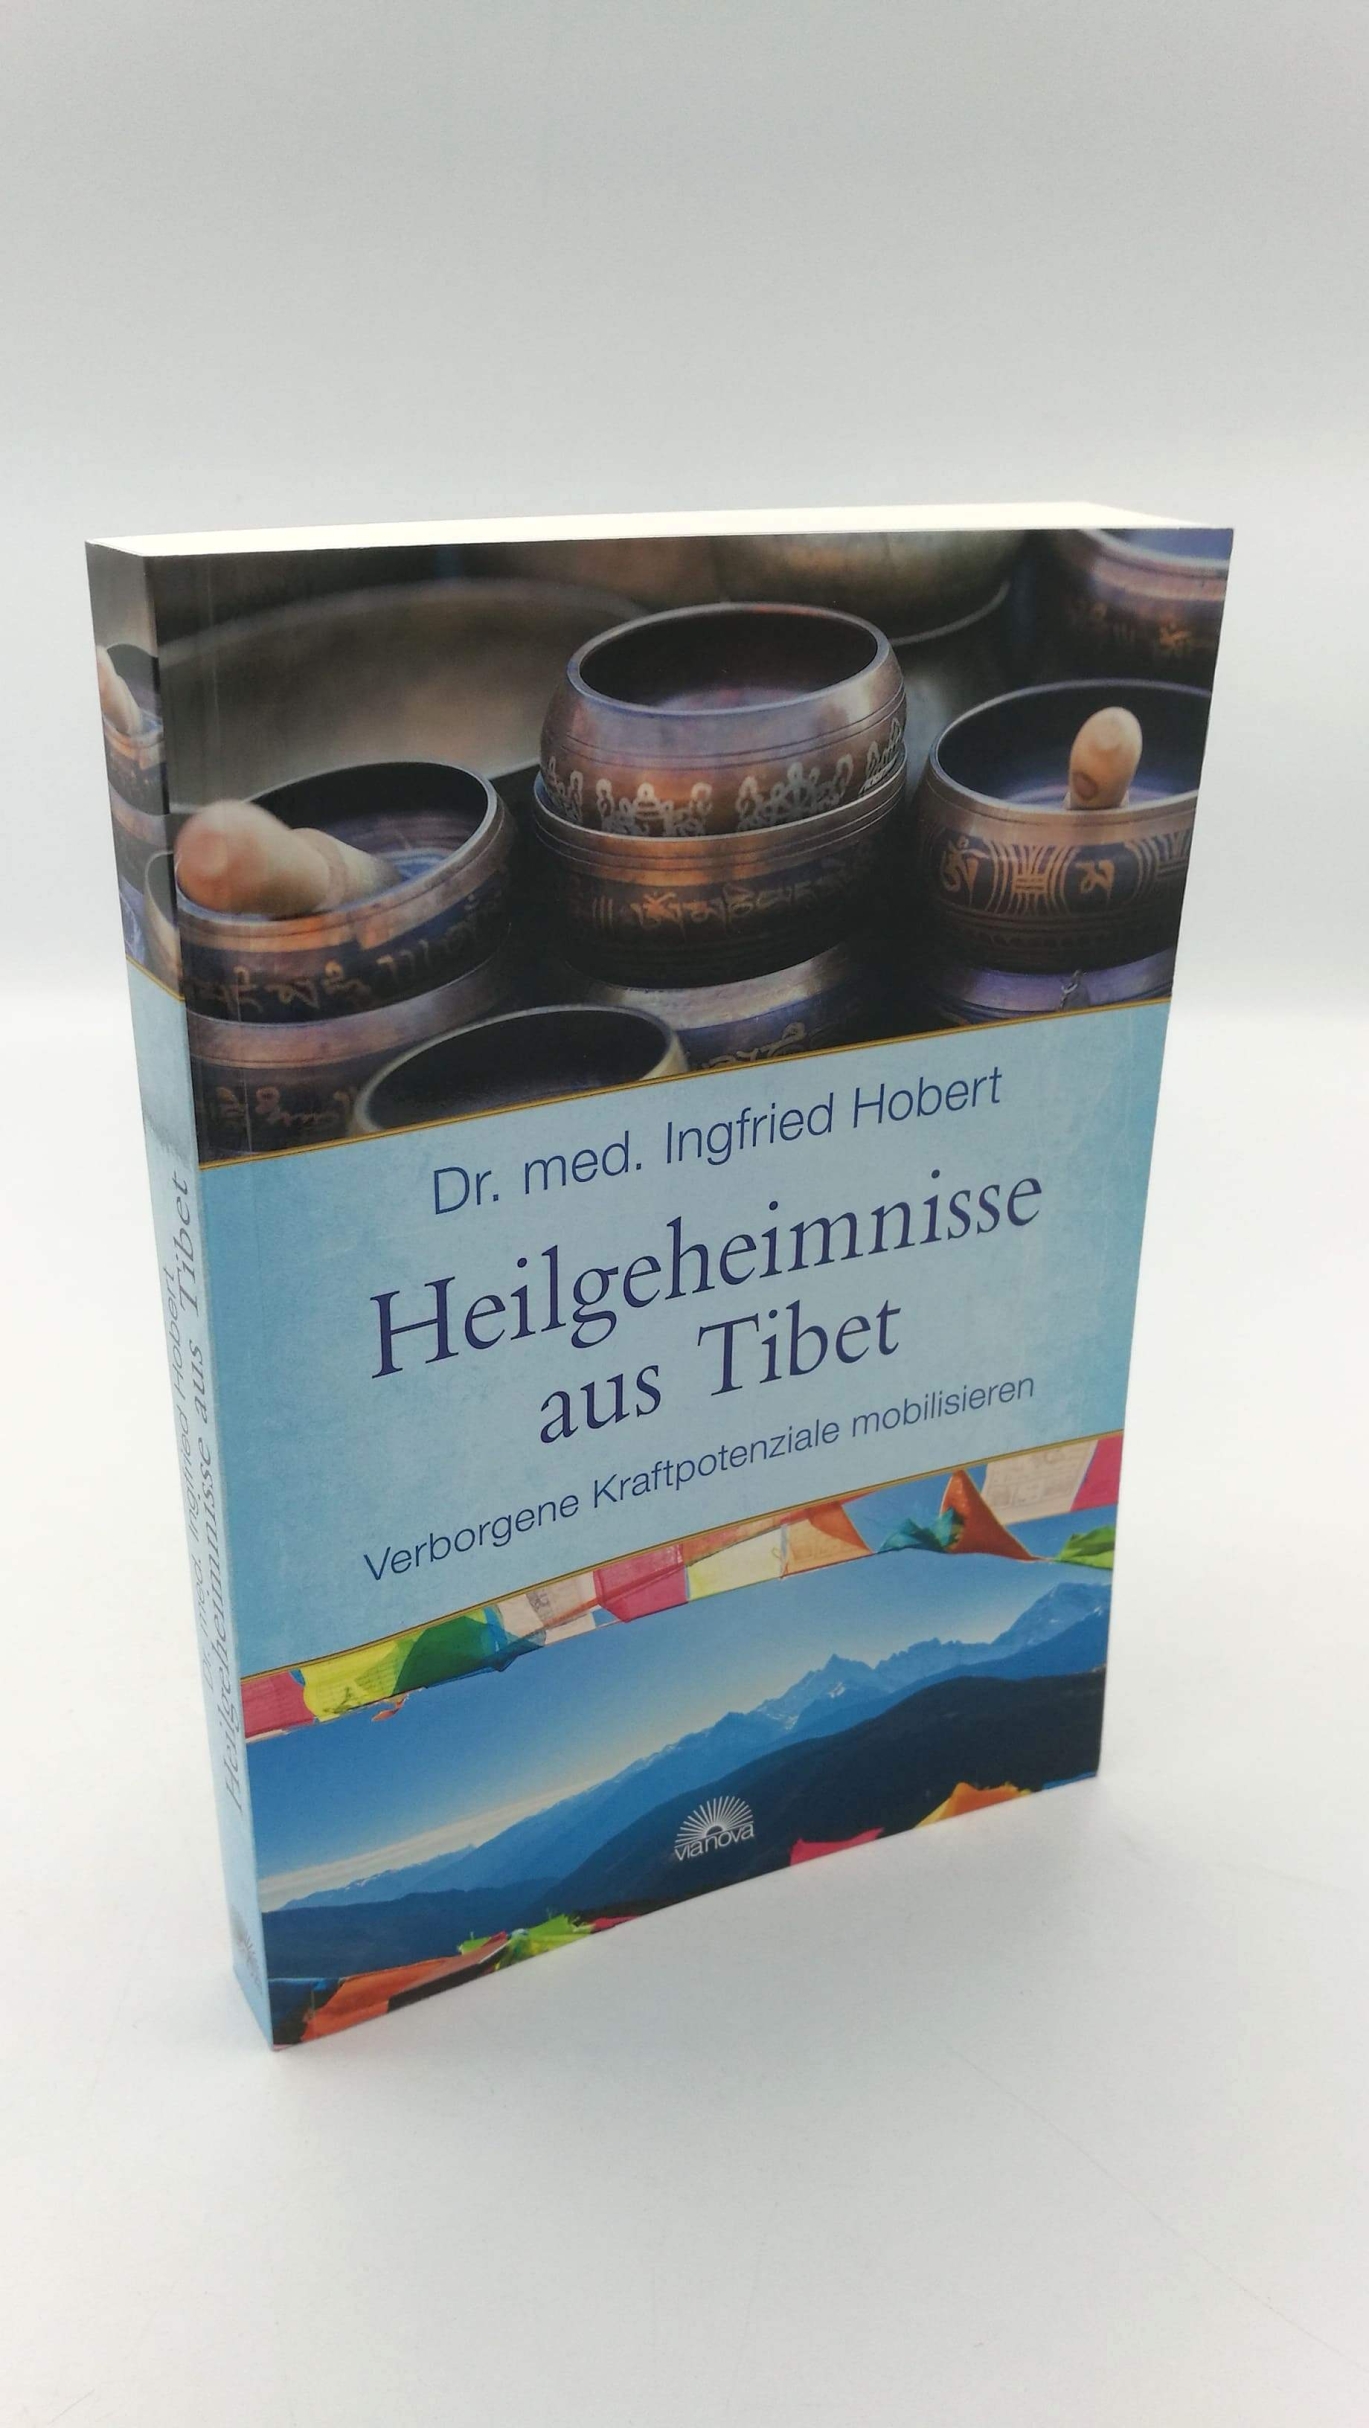 Hobert, Ingfried: Heilgeheimnisse aus Tibet Verborgene Kraftpotenziale mobilisieren